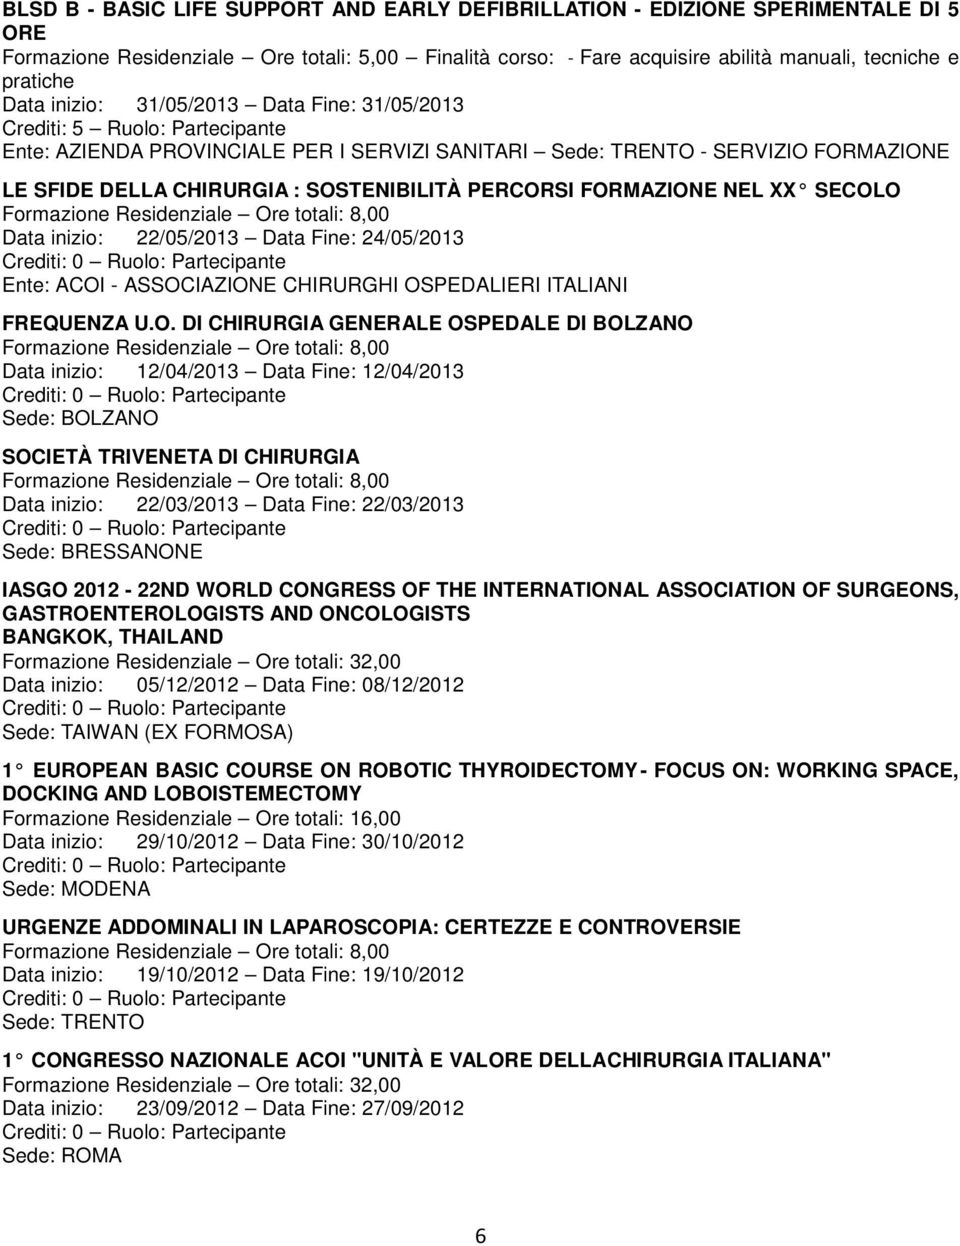 SOSTENIBILITÀ PERCORSI FORMAZIONE NEL XX SECOLO Data inizio: 22/05/2013 Data Fine: 24/05/2013 Ente: ACOI - ASSOCIAZIONE CHIRURGHI OSPEDALIERI ITALIANI FREQUENZA U.O. DI CHIRURGIA GENERALE OSPEDALE DI